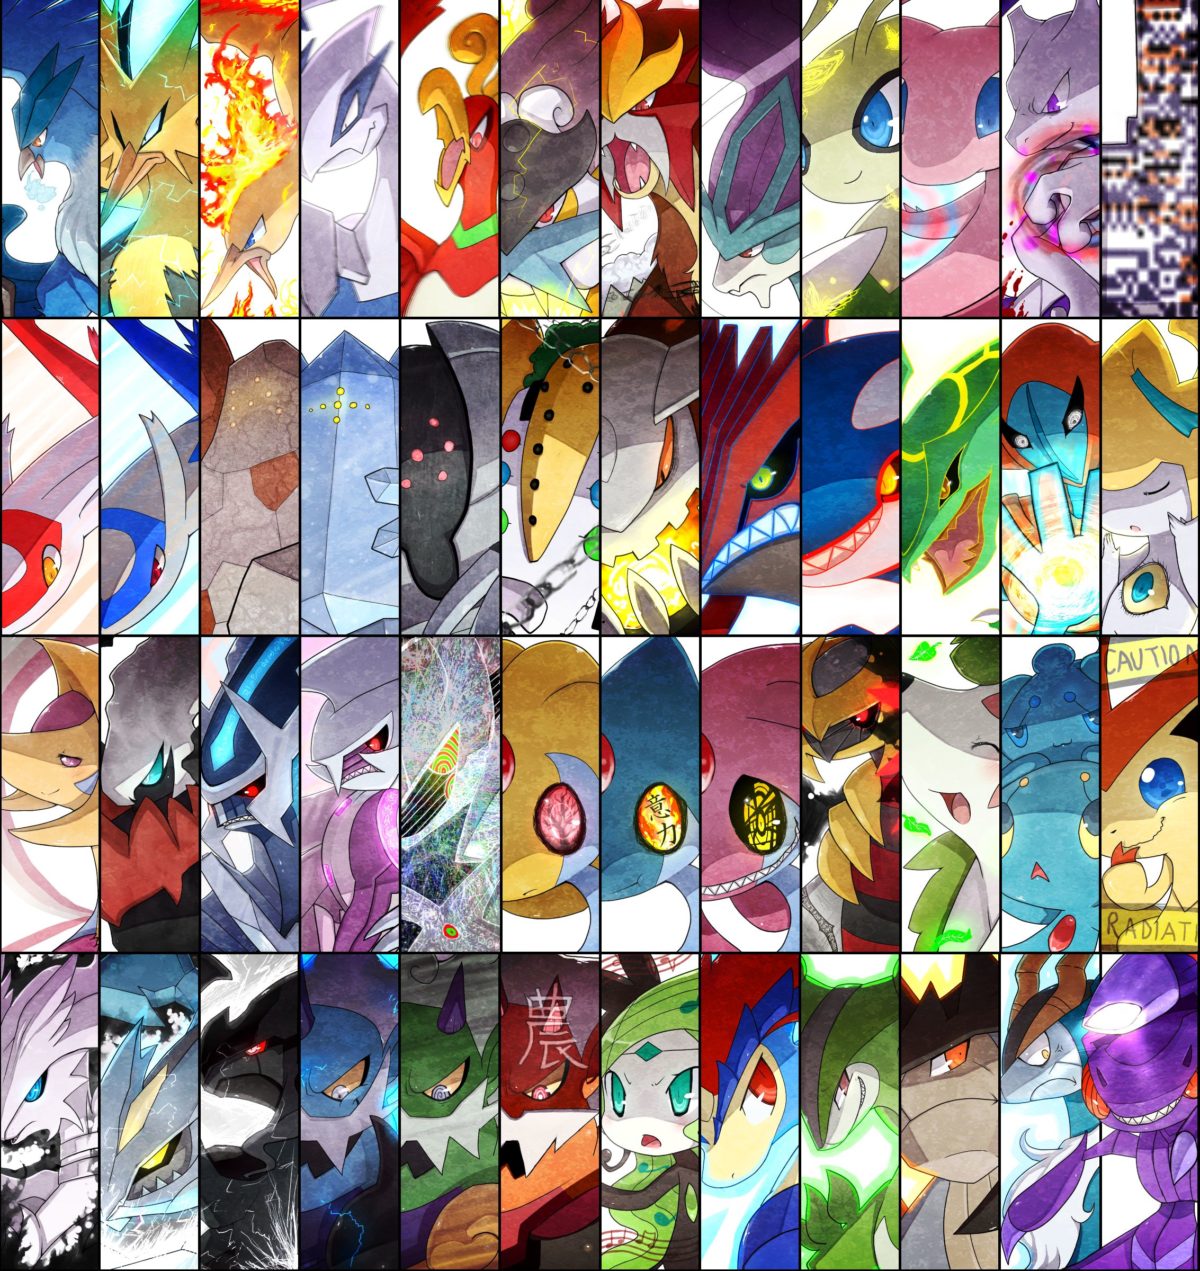 Azelf – Pokémon – Zerochan Anime Image Board